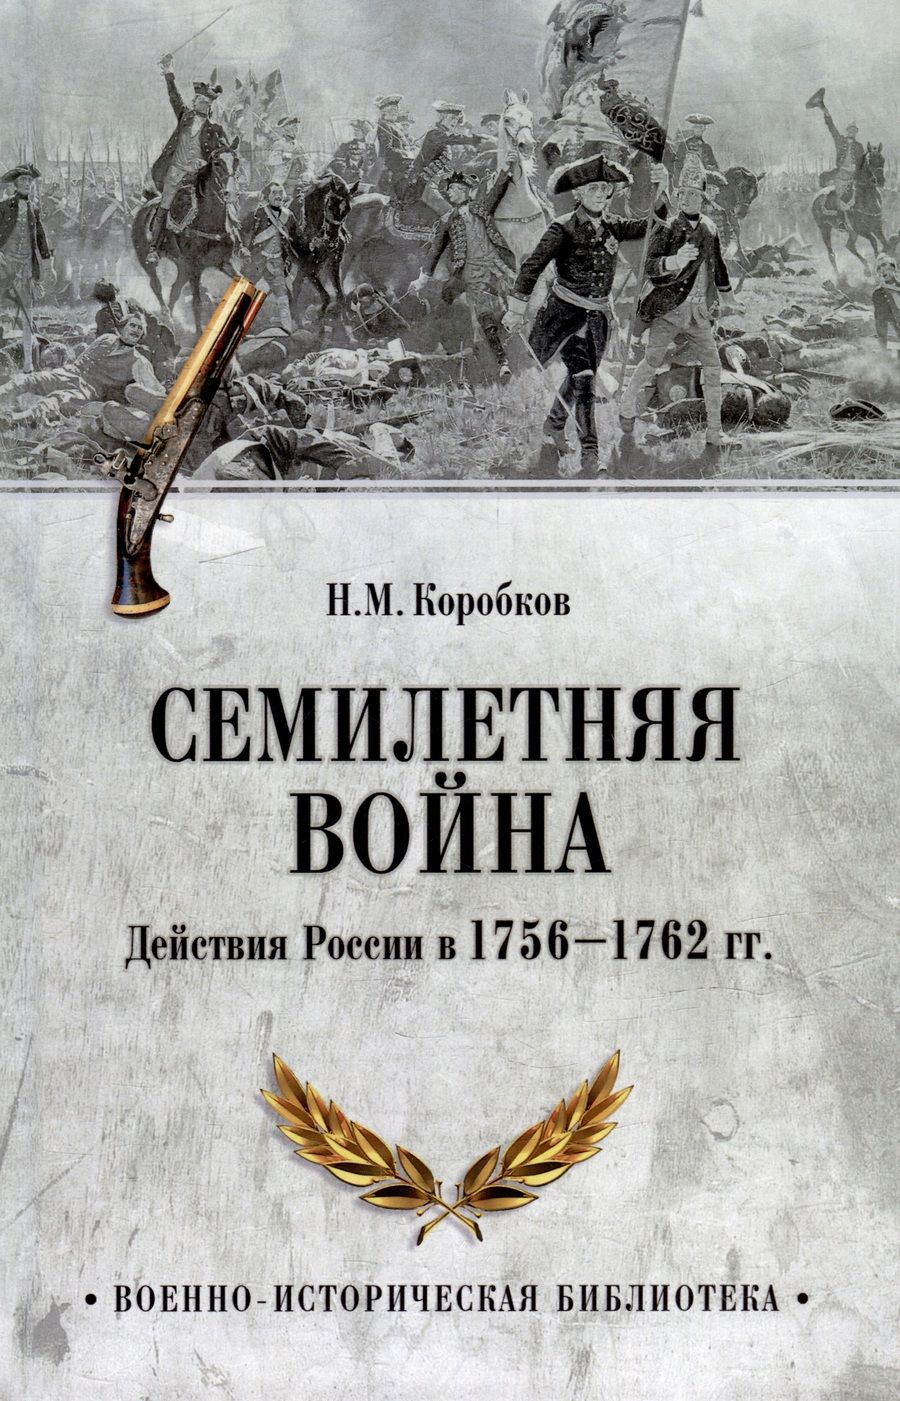 Обложка книги "Коробков: Семилетняя война. Действия России в 1756—1762 гг."